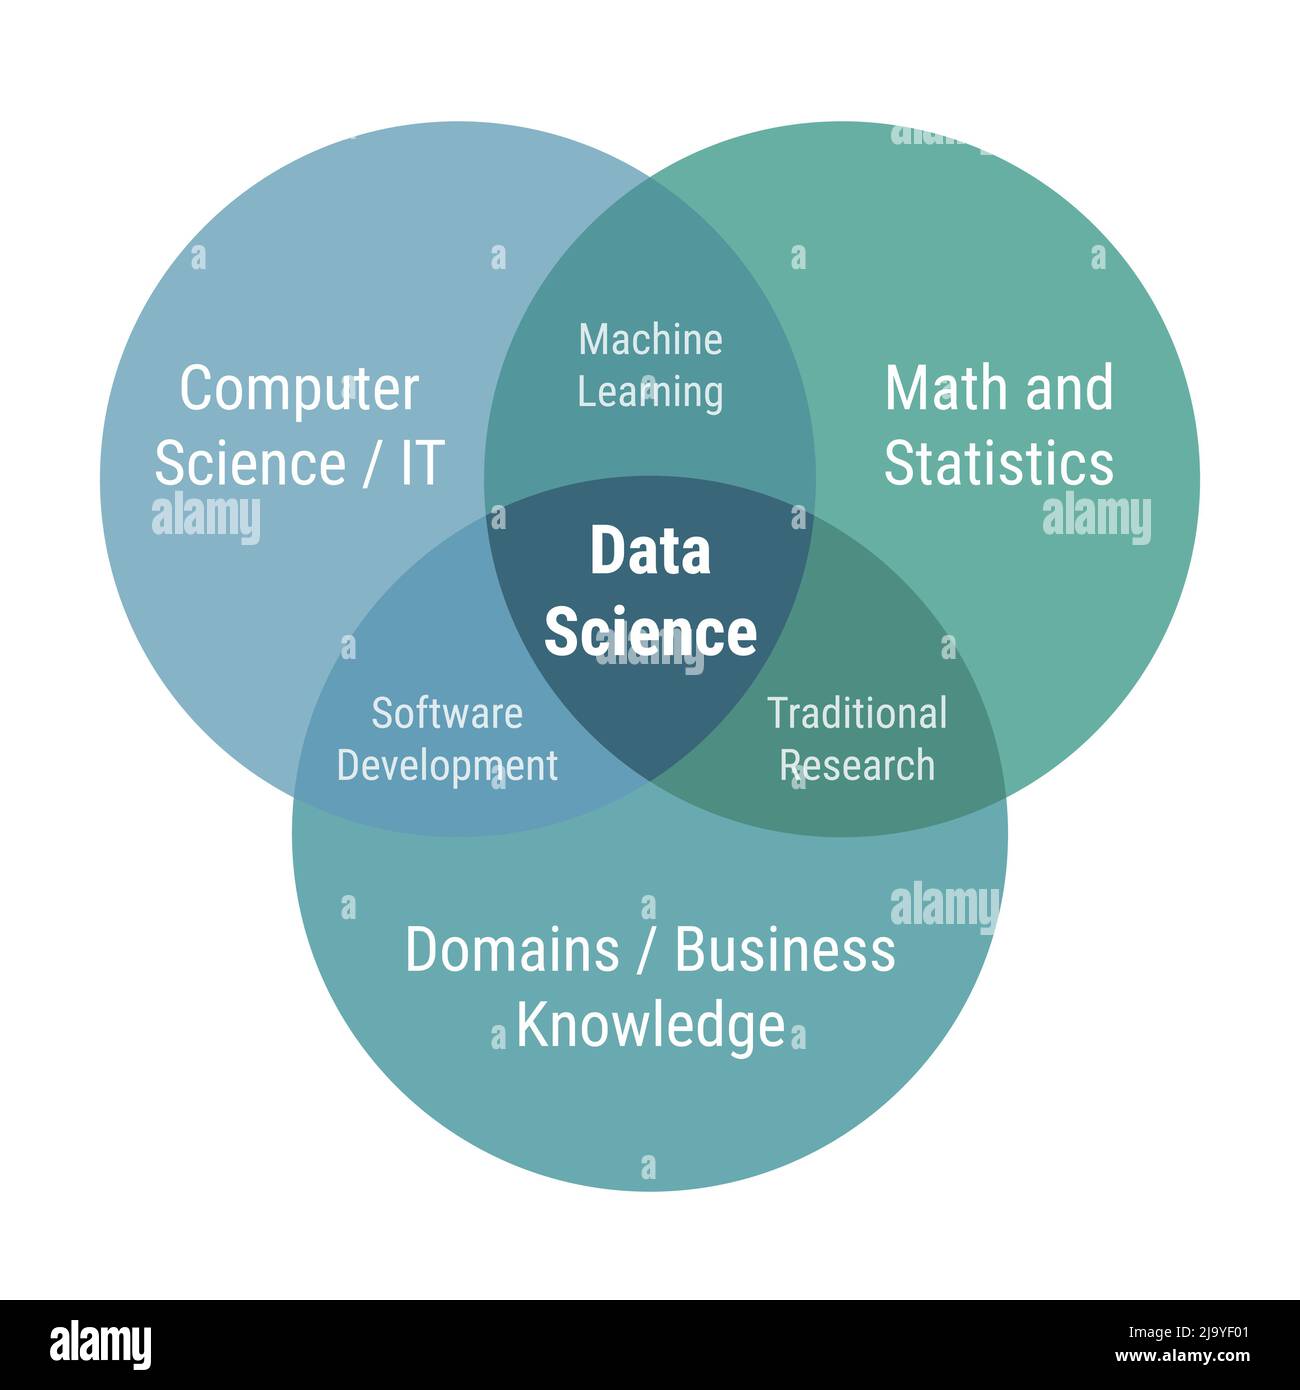 Data Science venn-Diagramm 3 überlappende Kreise. Informatik, IT, Mathematik und Statistik, Domäne und Wirtschaft. Flaches Design grün und blau Farbe vect Stock Vektor